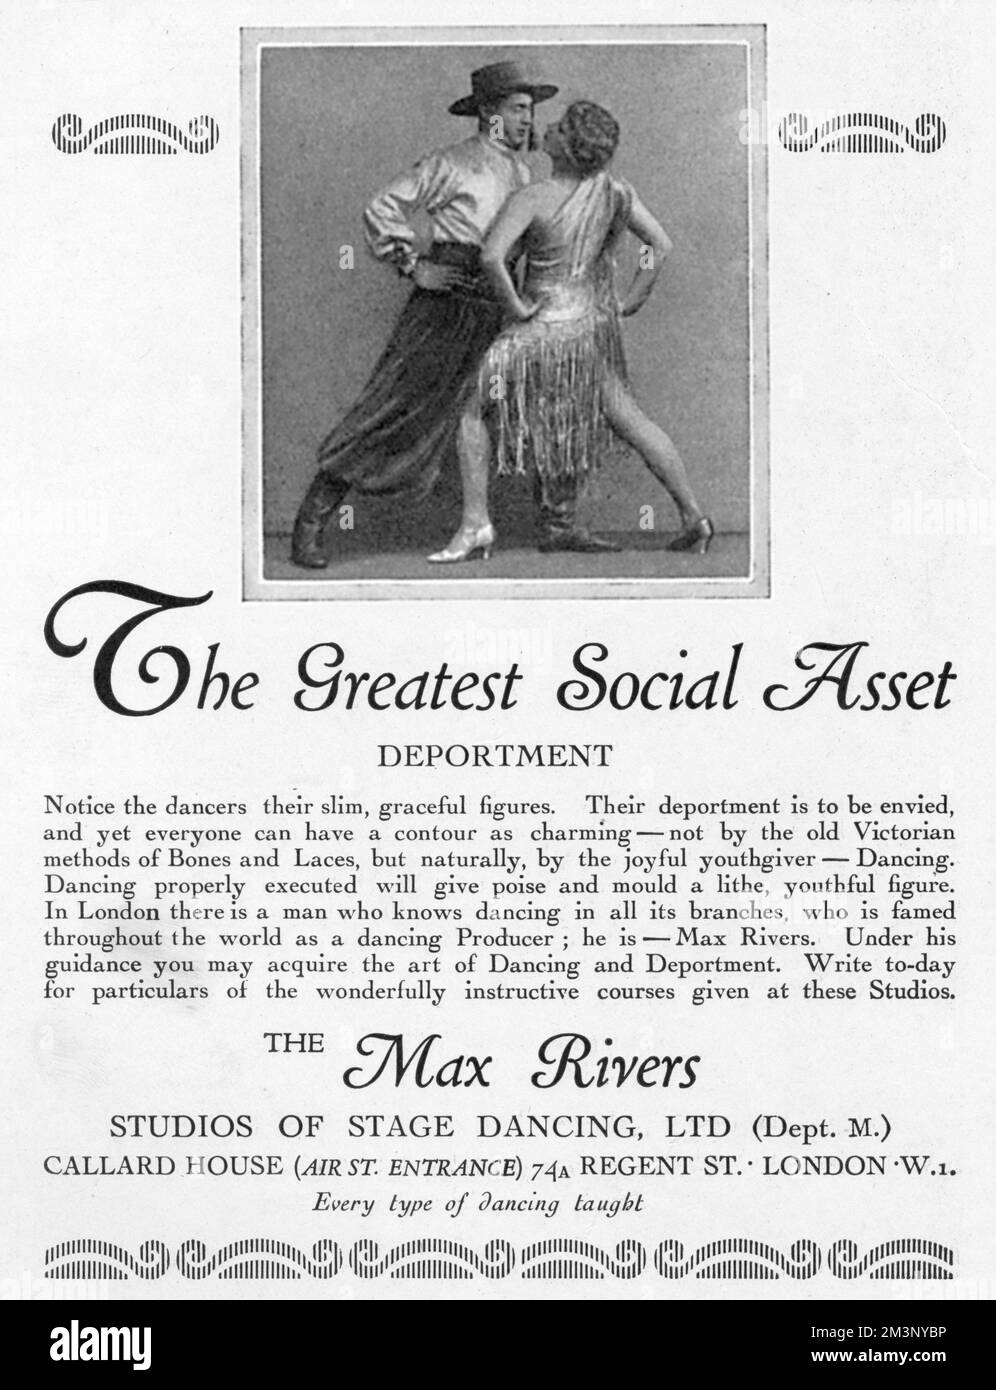 Pubblicità per i Max Rivers Studios di Stage Dancing, il modo per raggiungere un lithe e una figura aggraziata secondo la copia. Data: 1928 Foto Stock